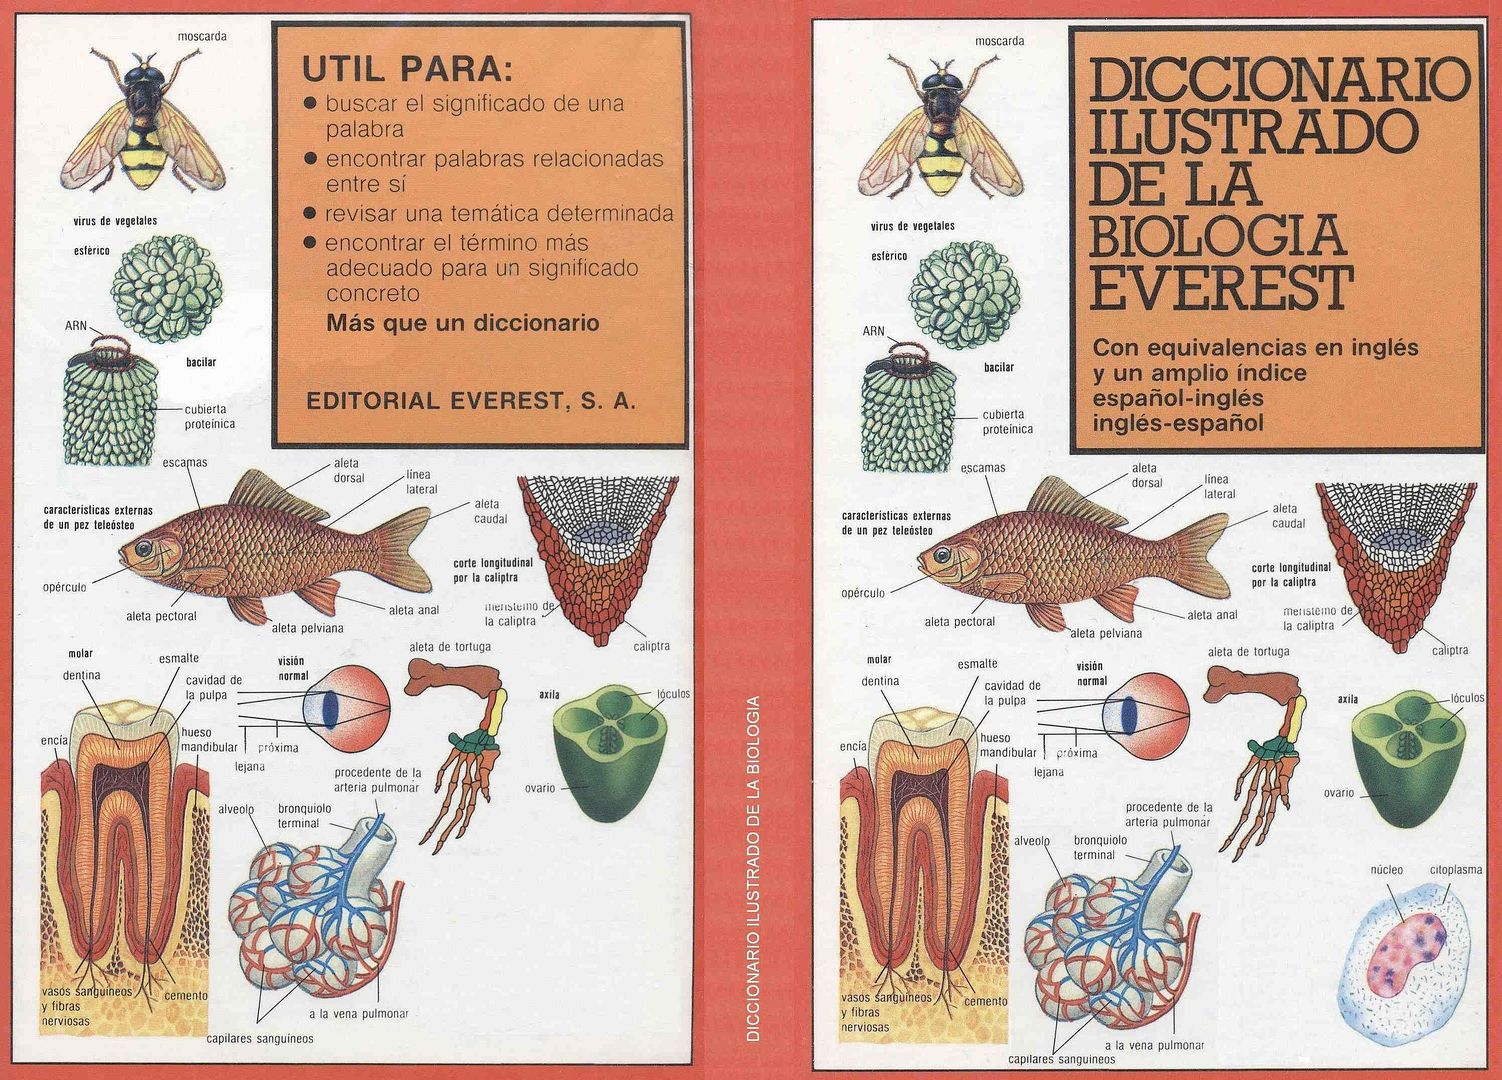 biologia - Diccionario ilustrado de biología (Everest)